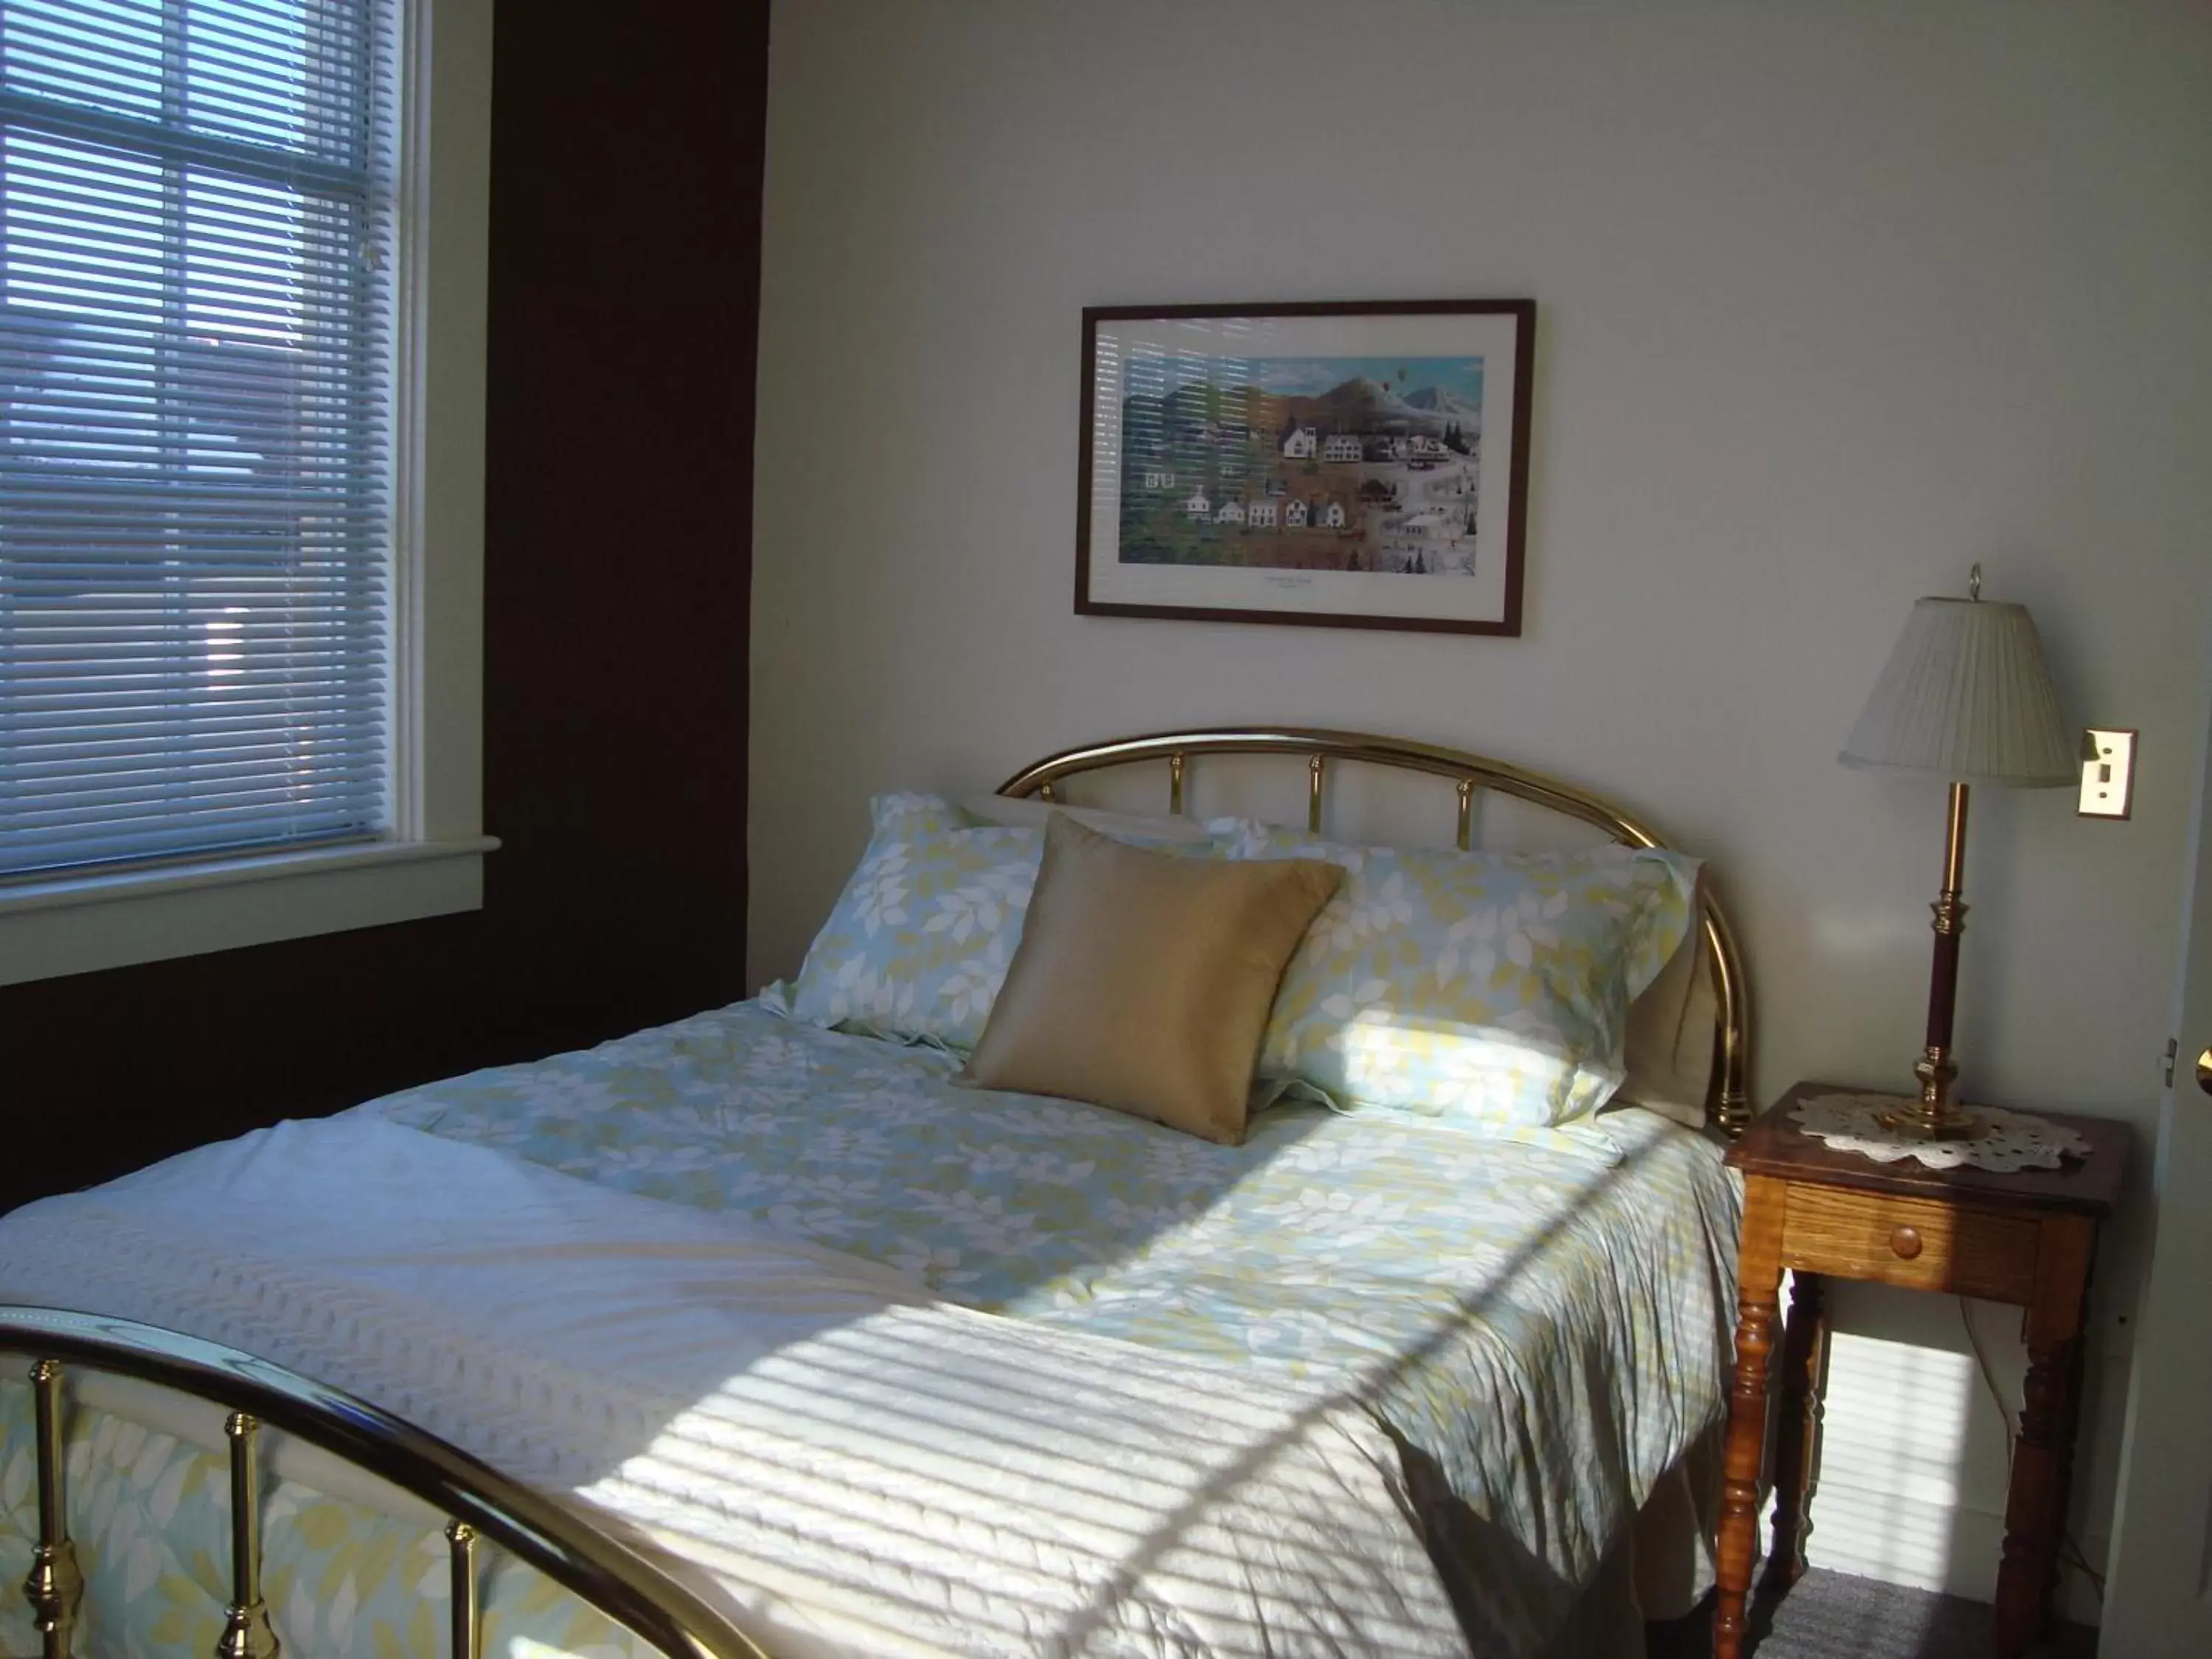 Bedroom, Room Photo in Bristol Suites